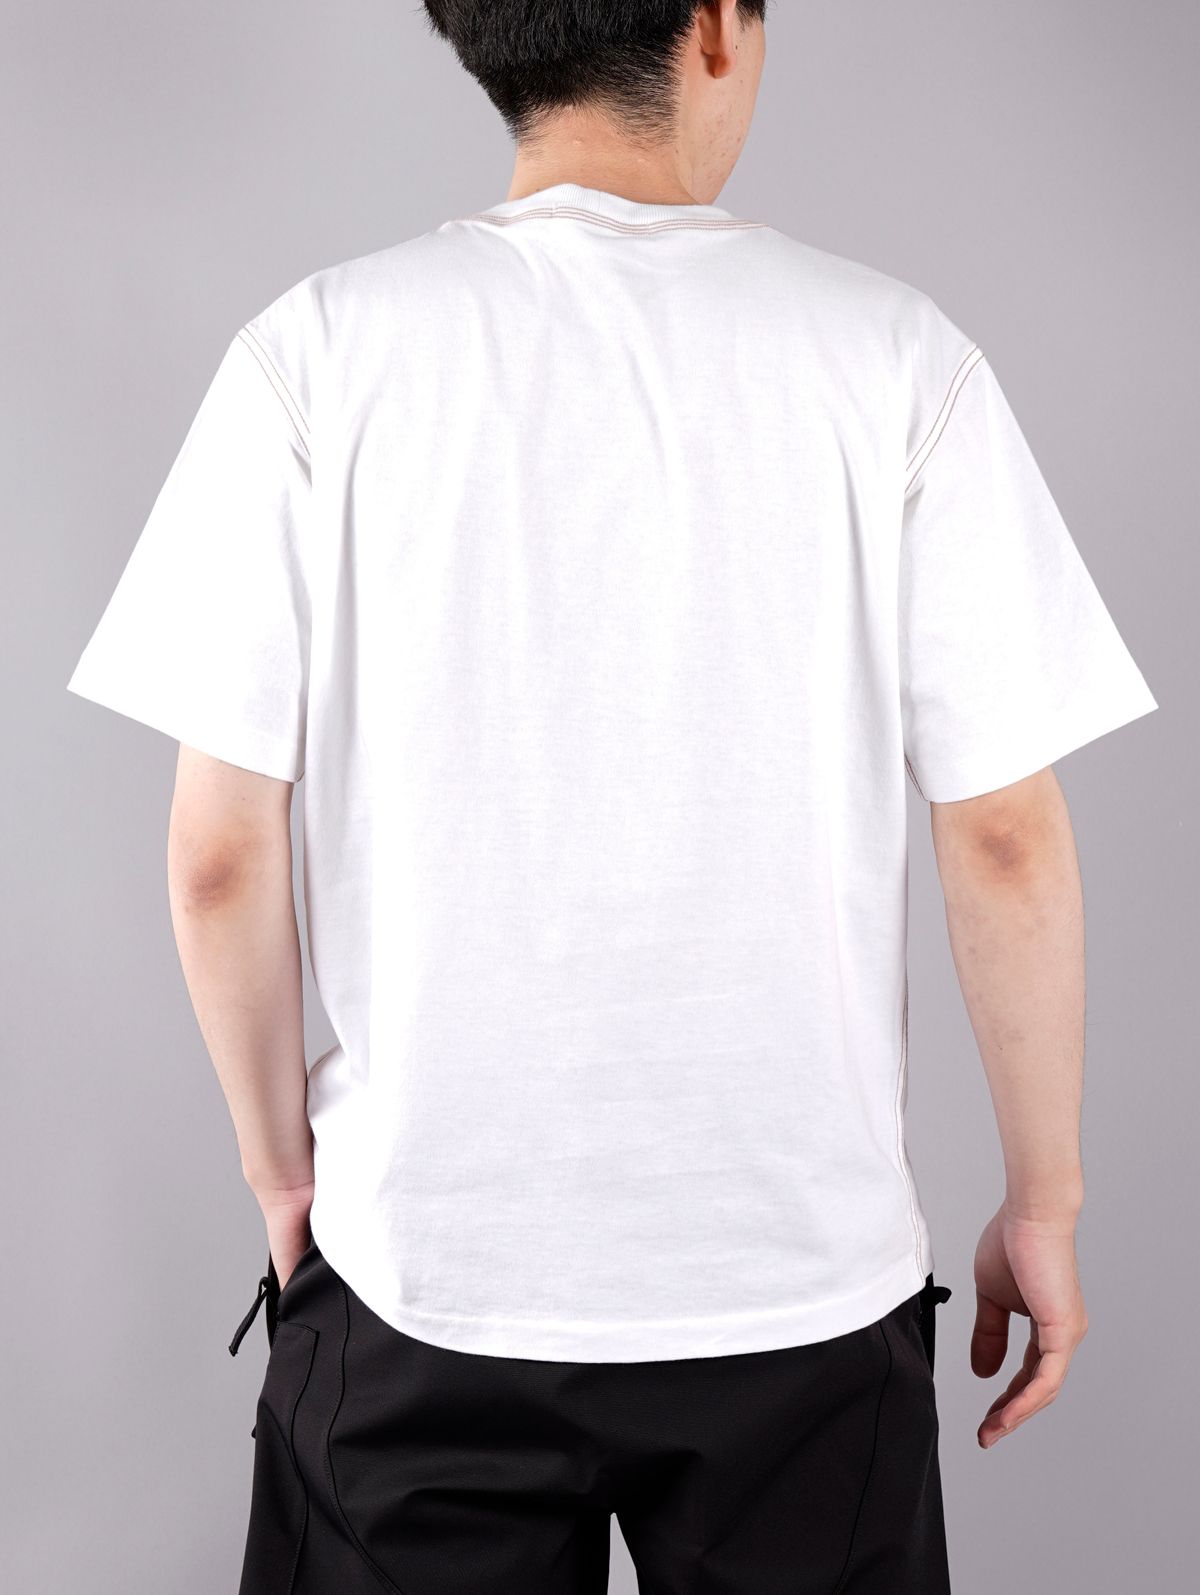 STONE ISLAND - ラスト1点 / T-SHIRT / Tシャツ (ホワイト) | Confidence